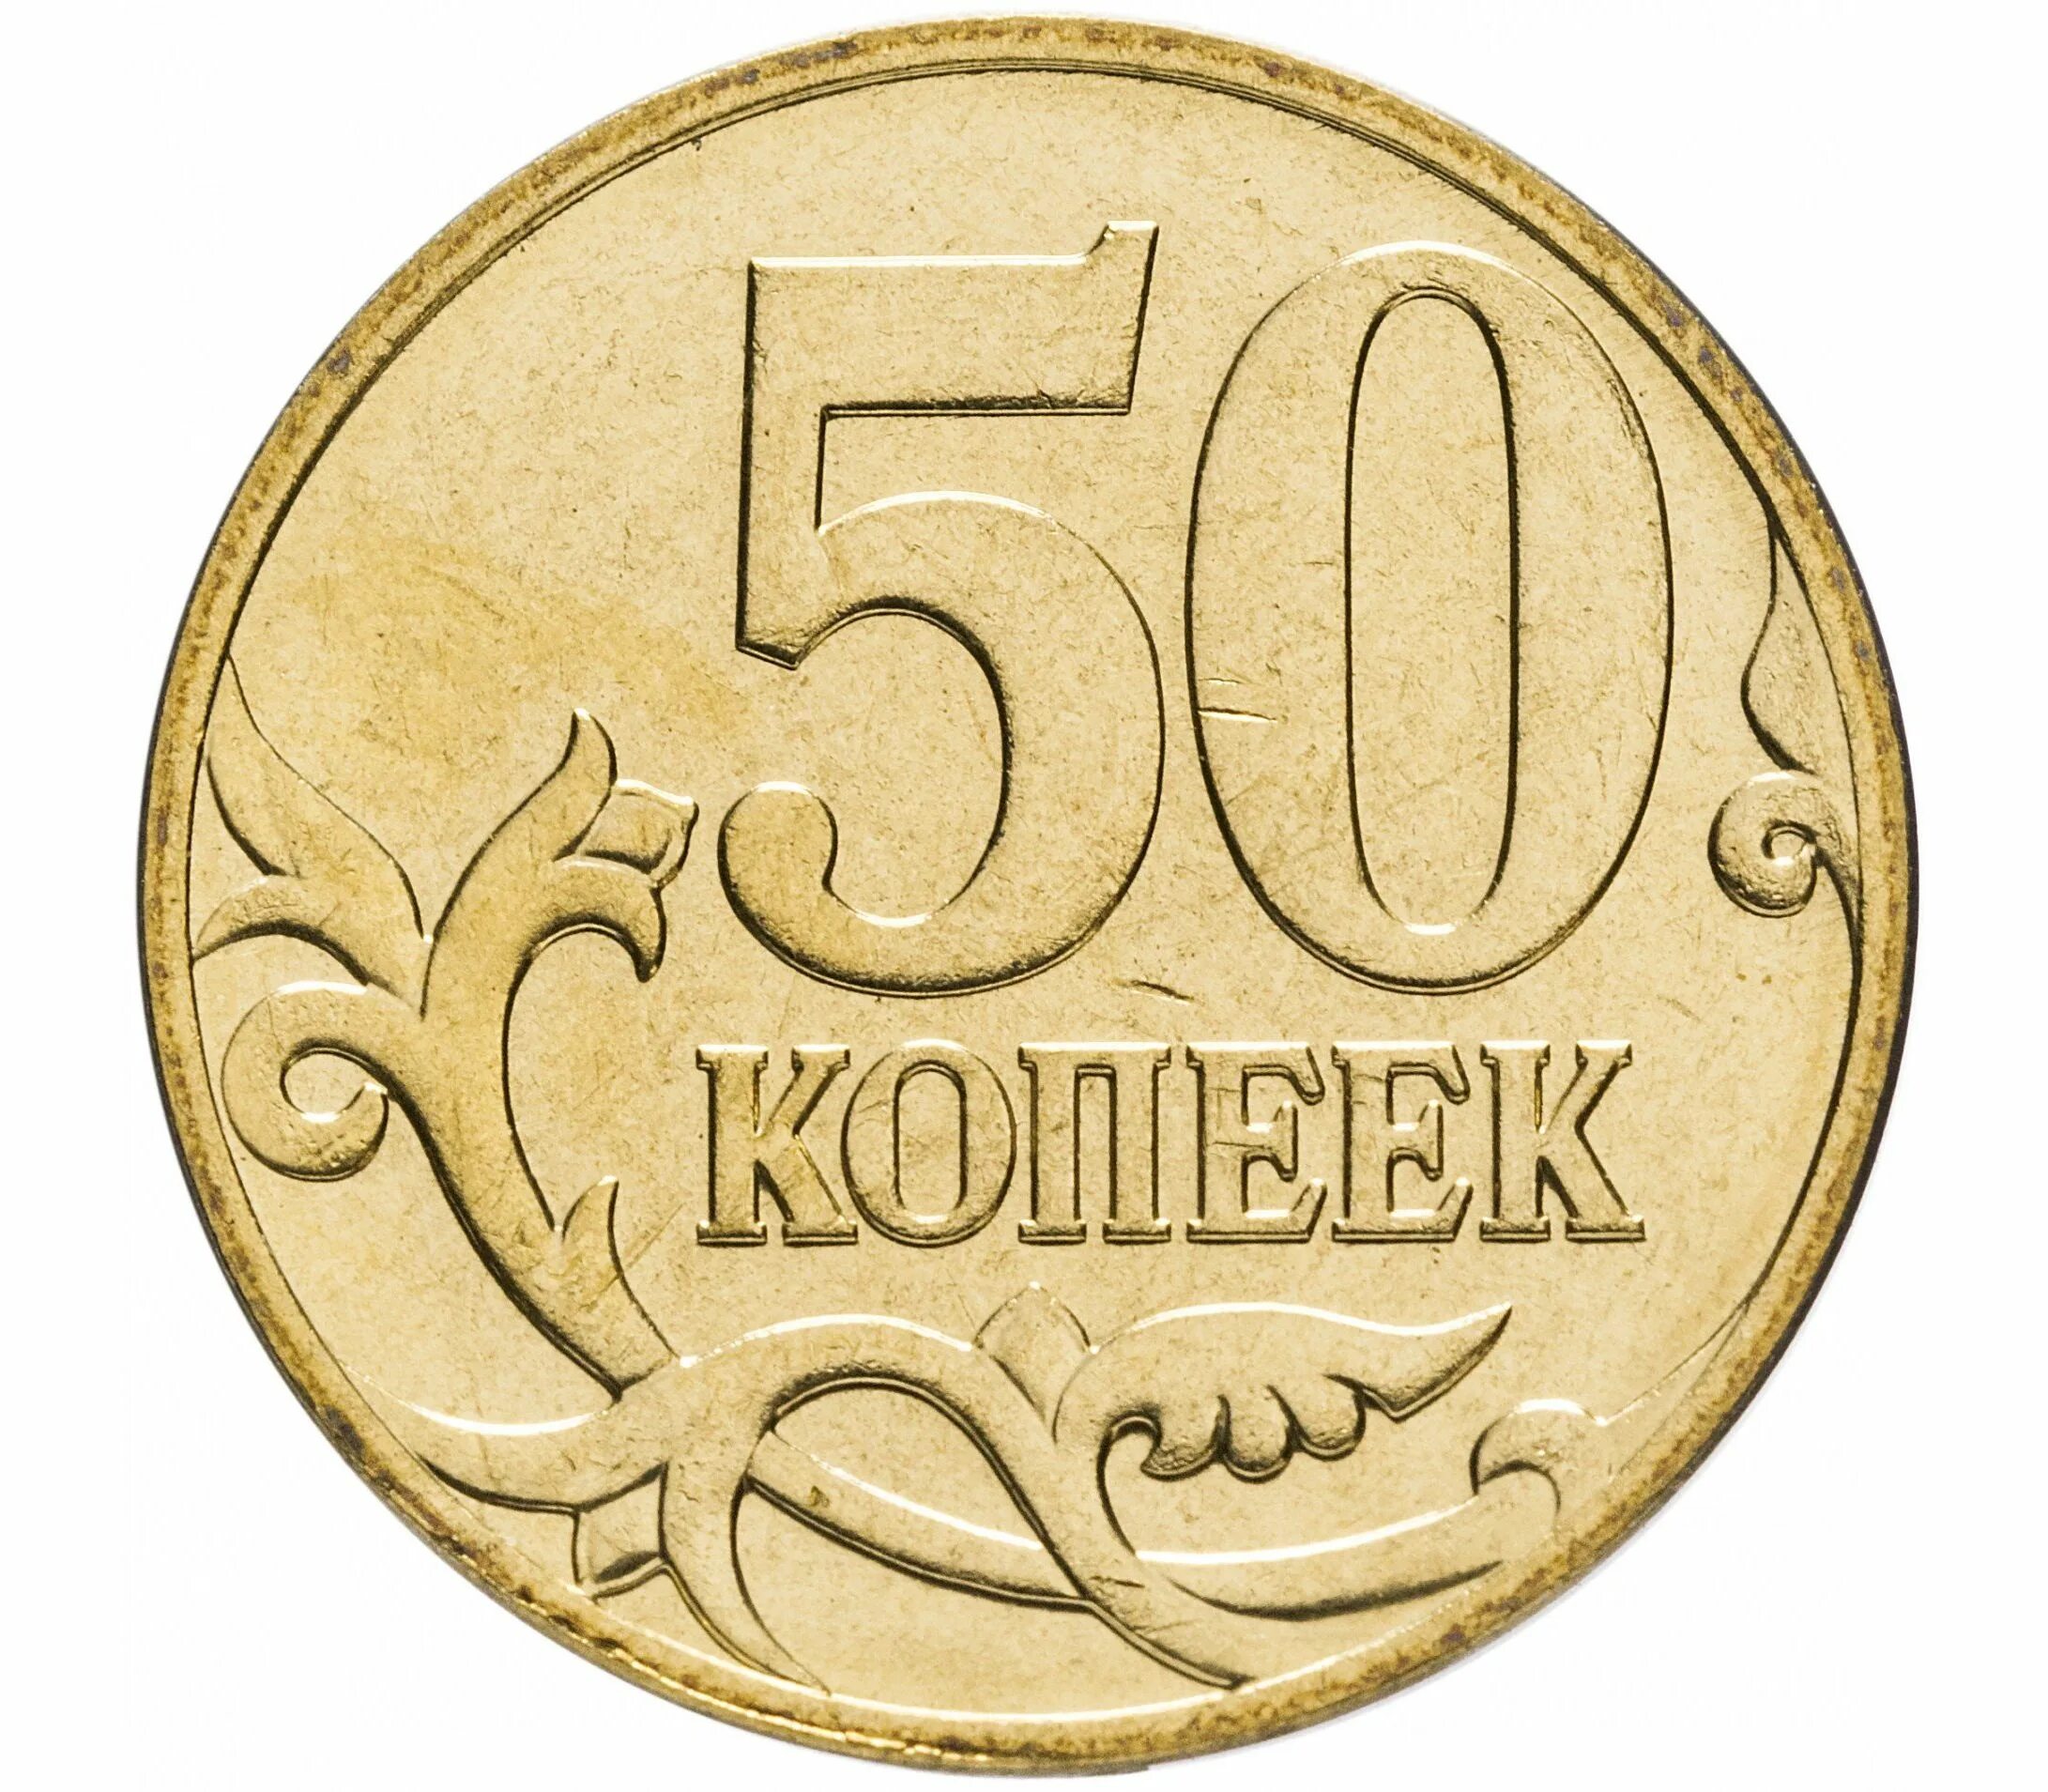 Ценные монеты копейки 50 копеек. 50 Копеек 2007 года. 50 Копеек 2007 м. Монеты номиналом 50 копеек. Ценные монеты россии копейки